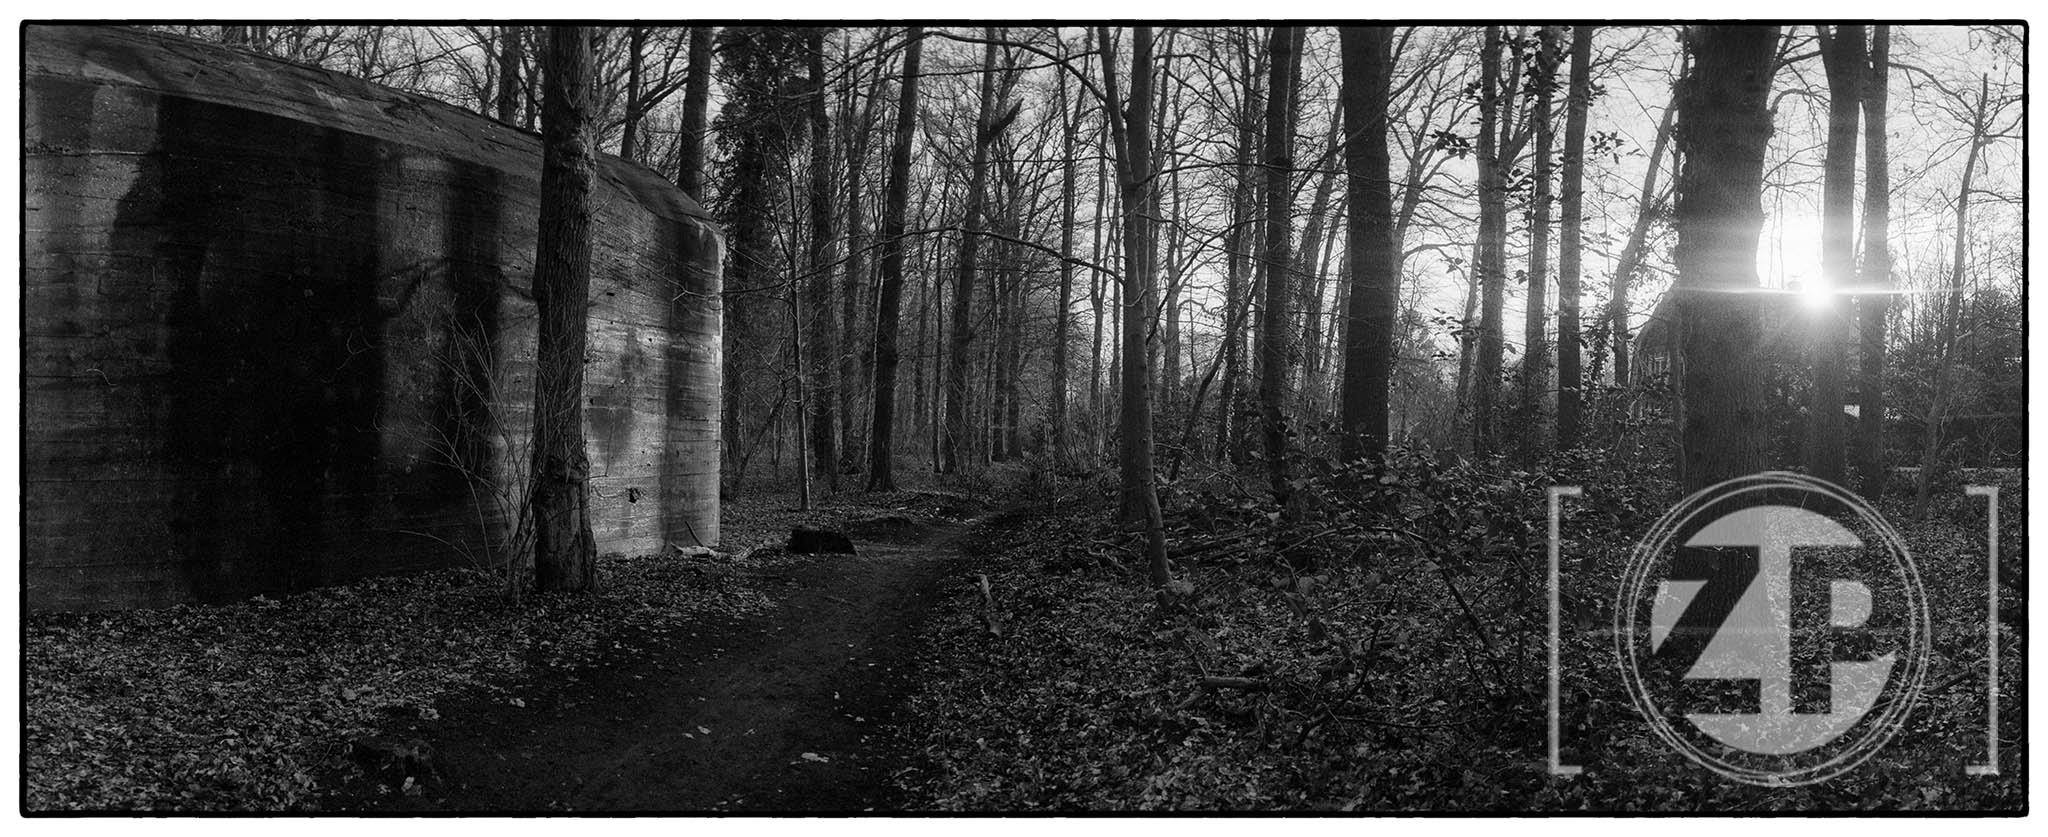 De bunker in het Warnsveldse bos, gefotografeerd met een Horizon 202 camera op Ilford HP5 film. ©Patrick van Gemert